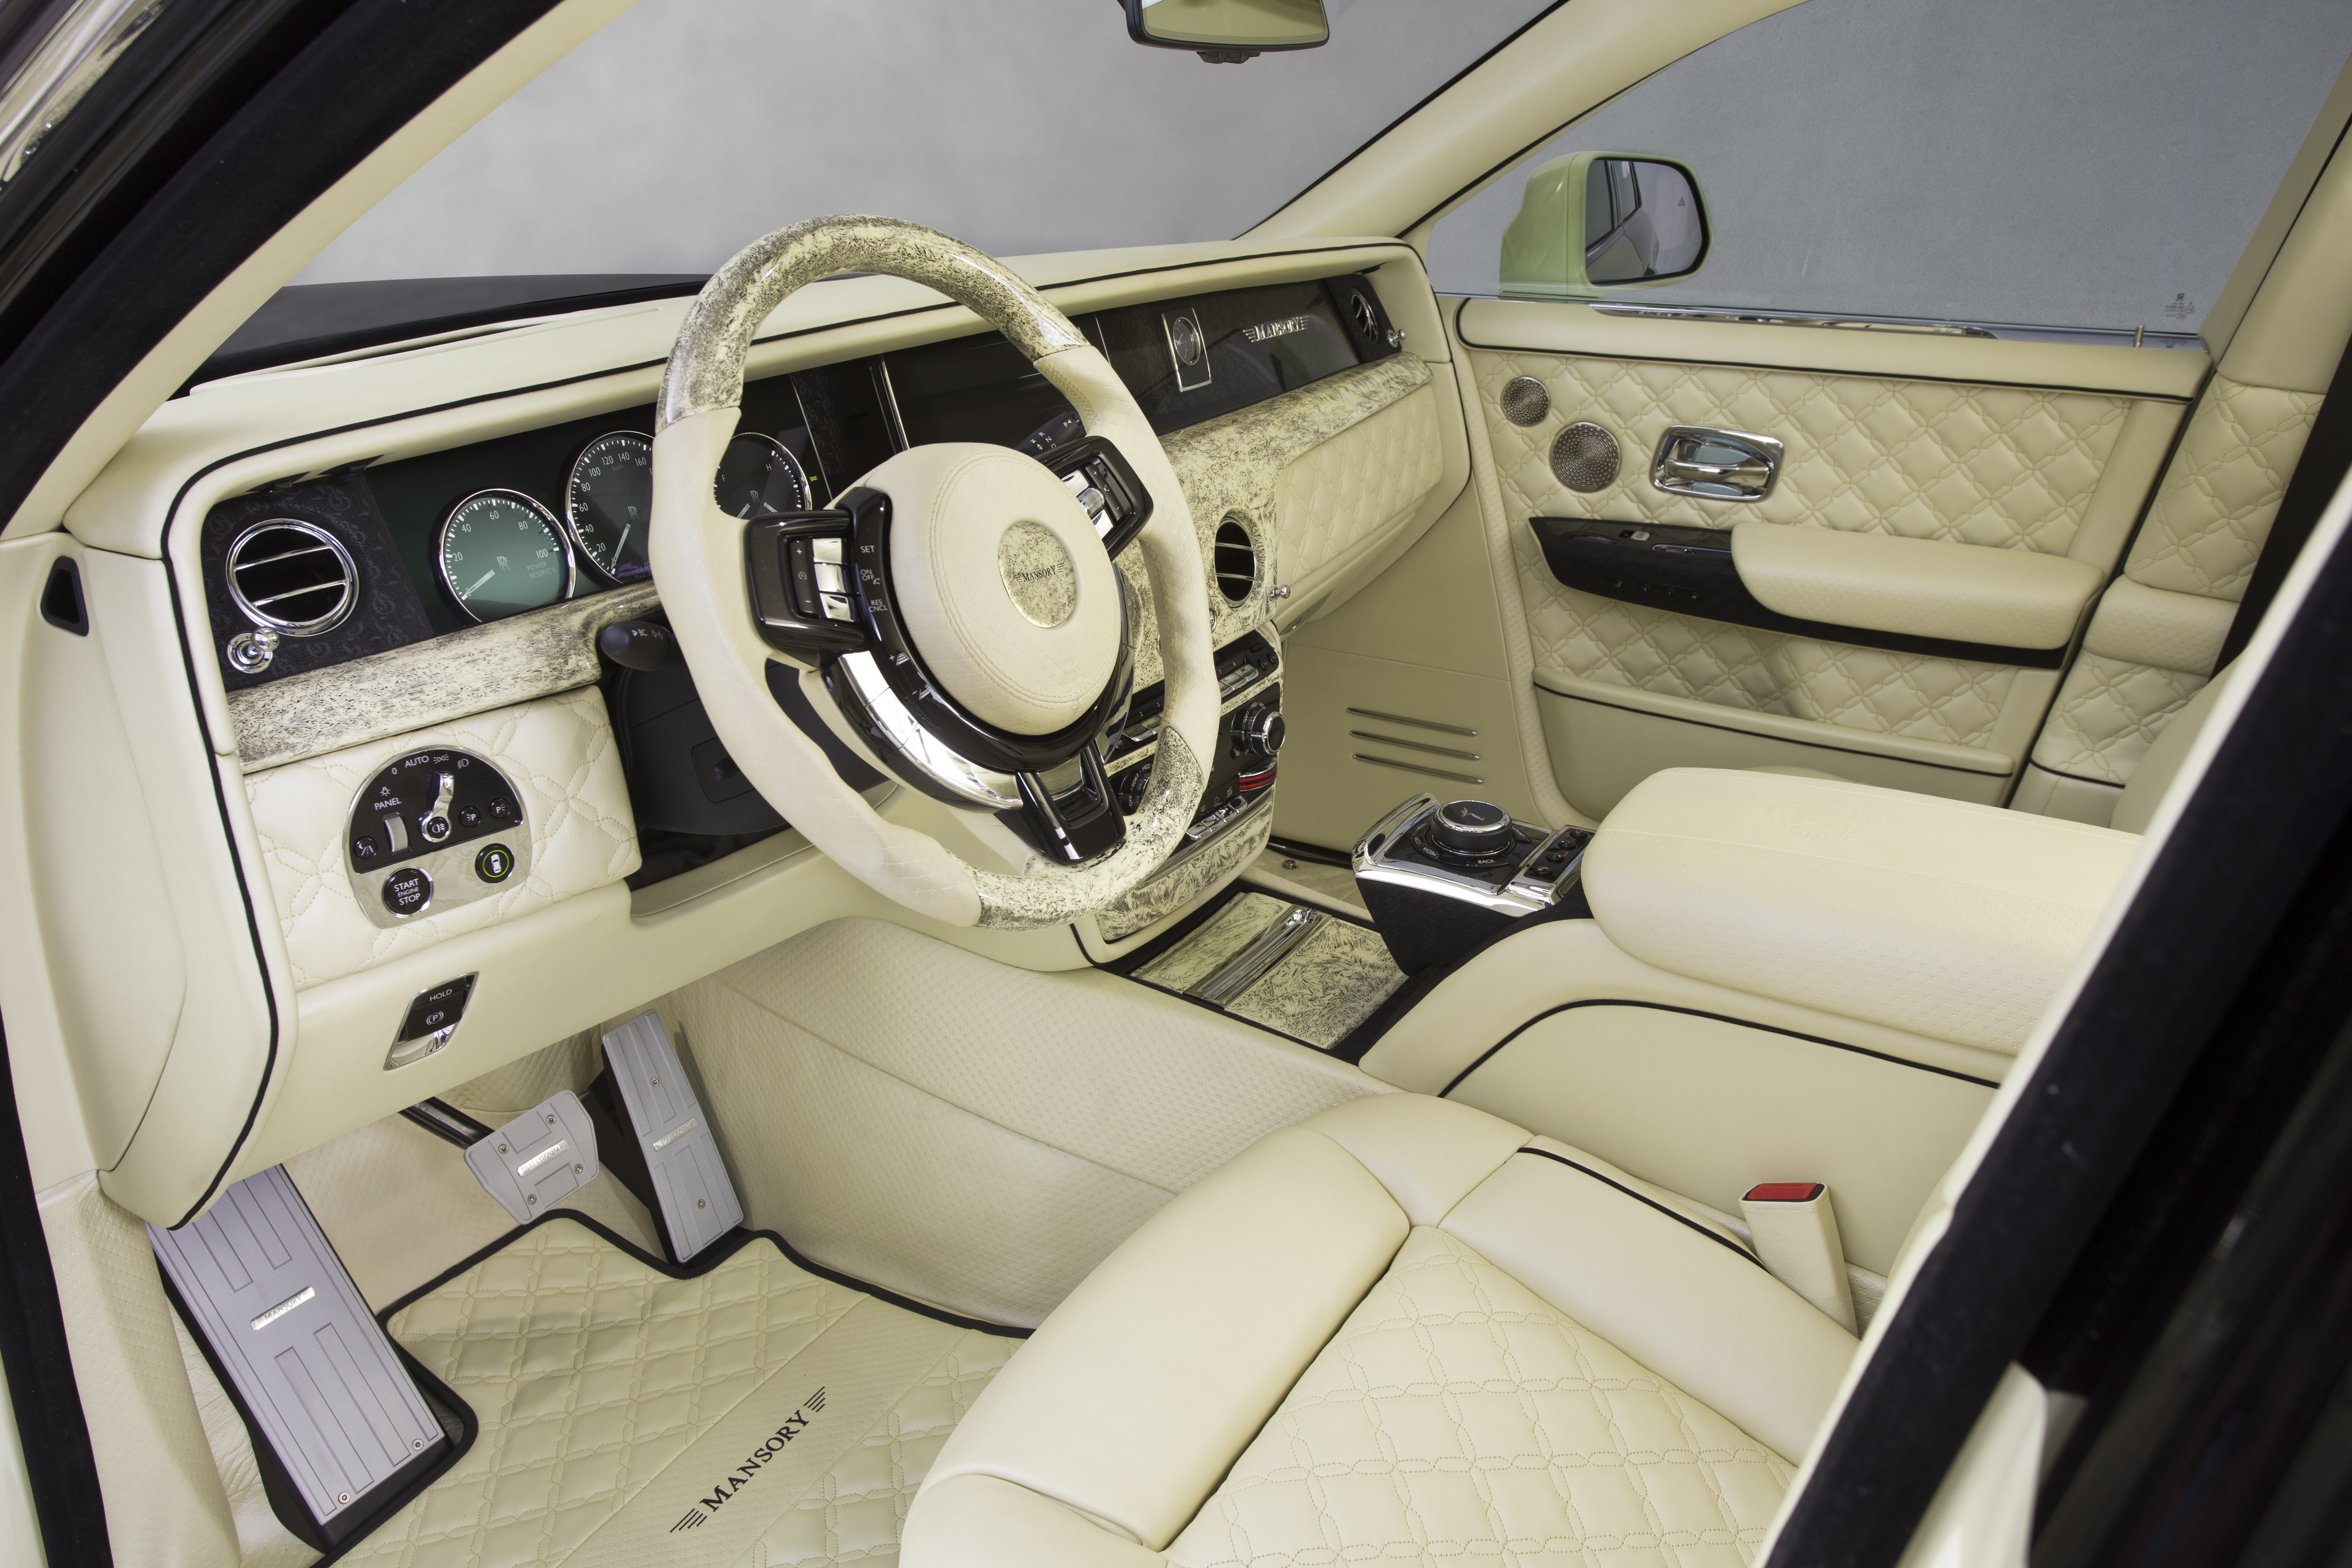 RollsRoyce Phantom giá 838 tỉ đồng Mercedes thu gọn danh mục sản phẩm   Báo Dân trí